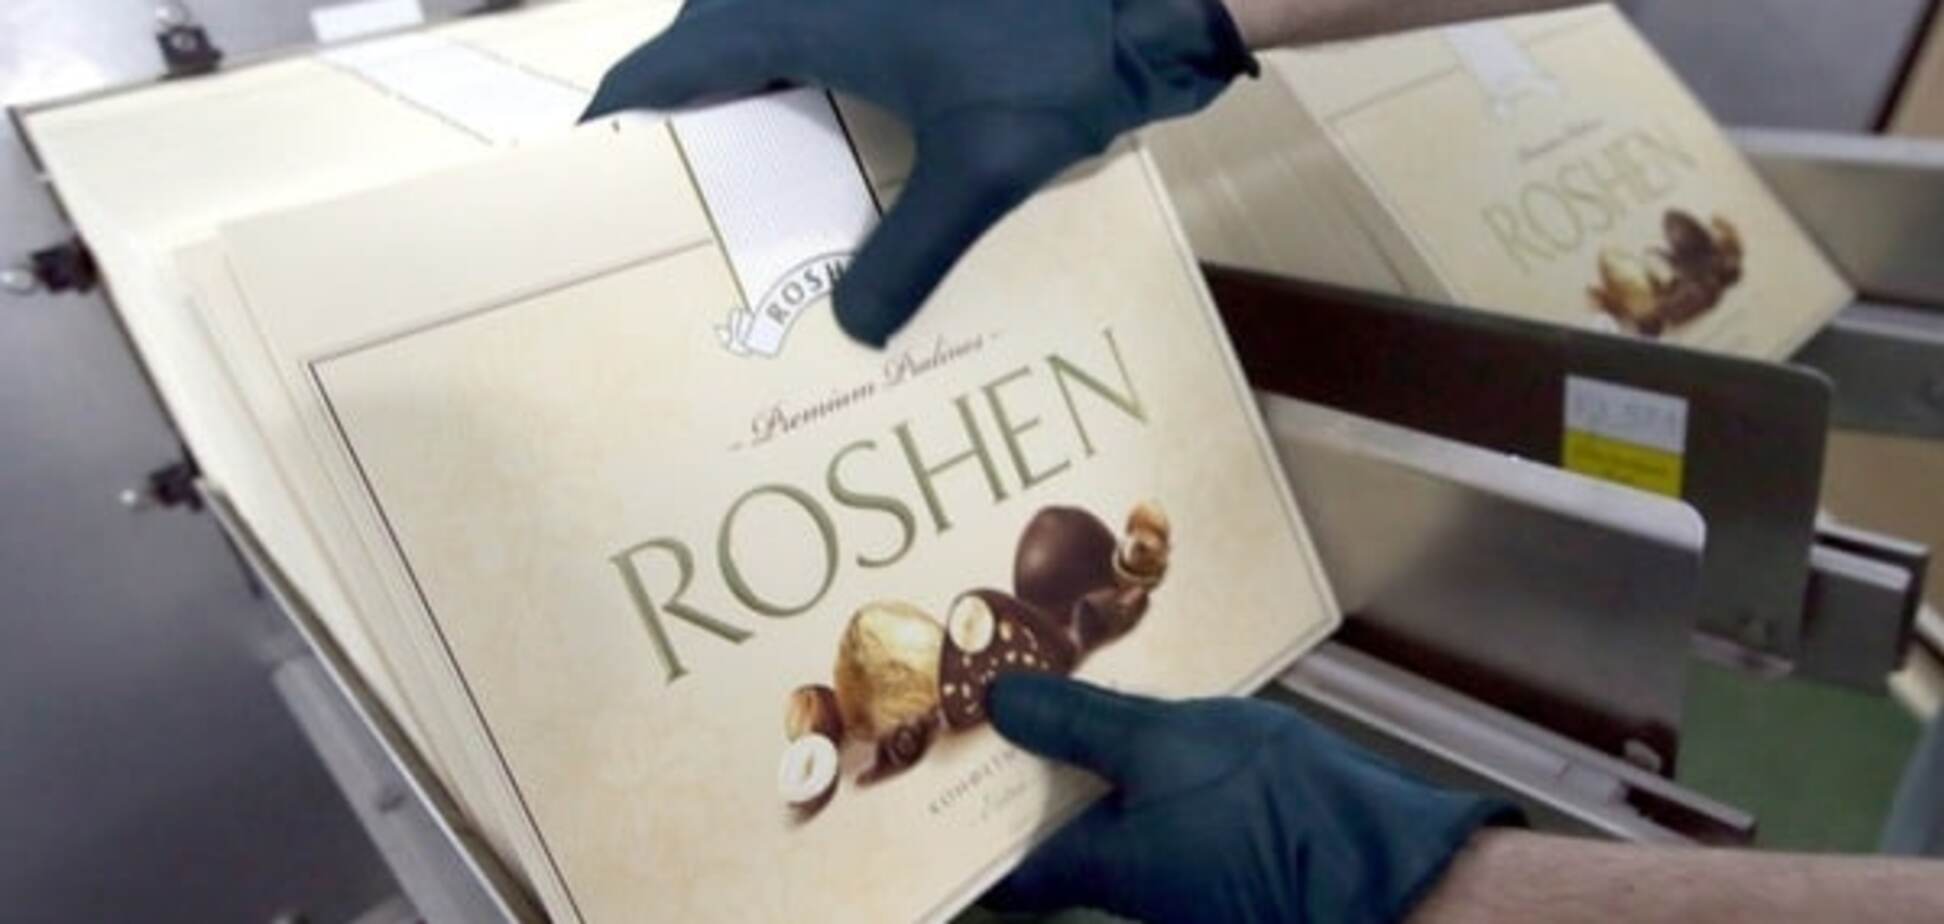 Російський суд виніс рішення щодо липецької фабрики Roshen